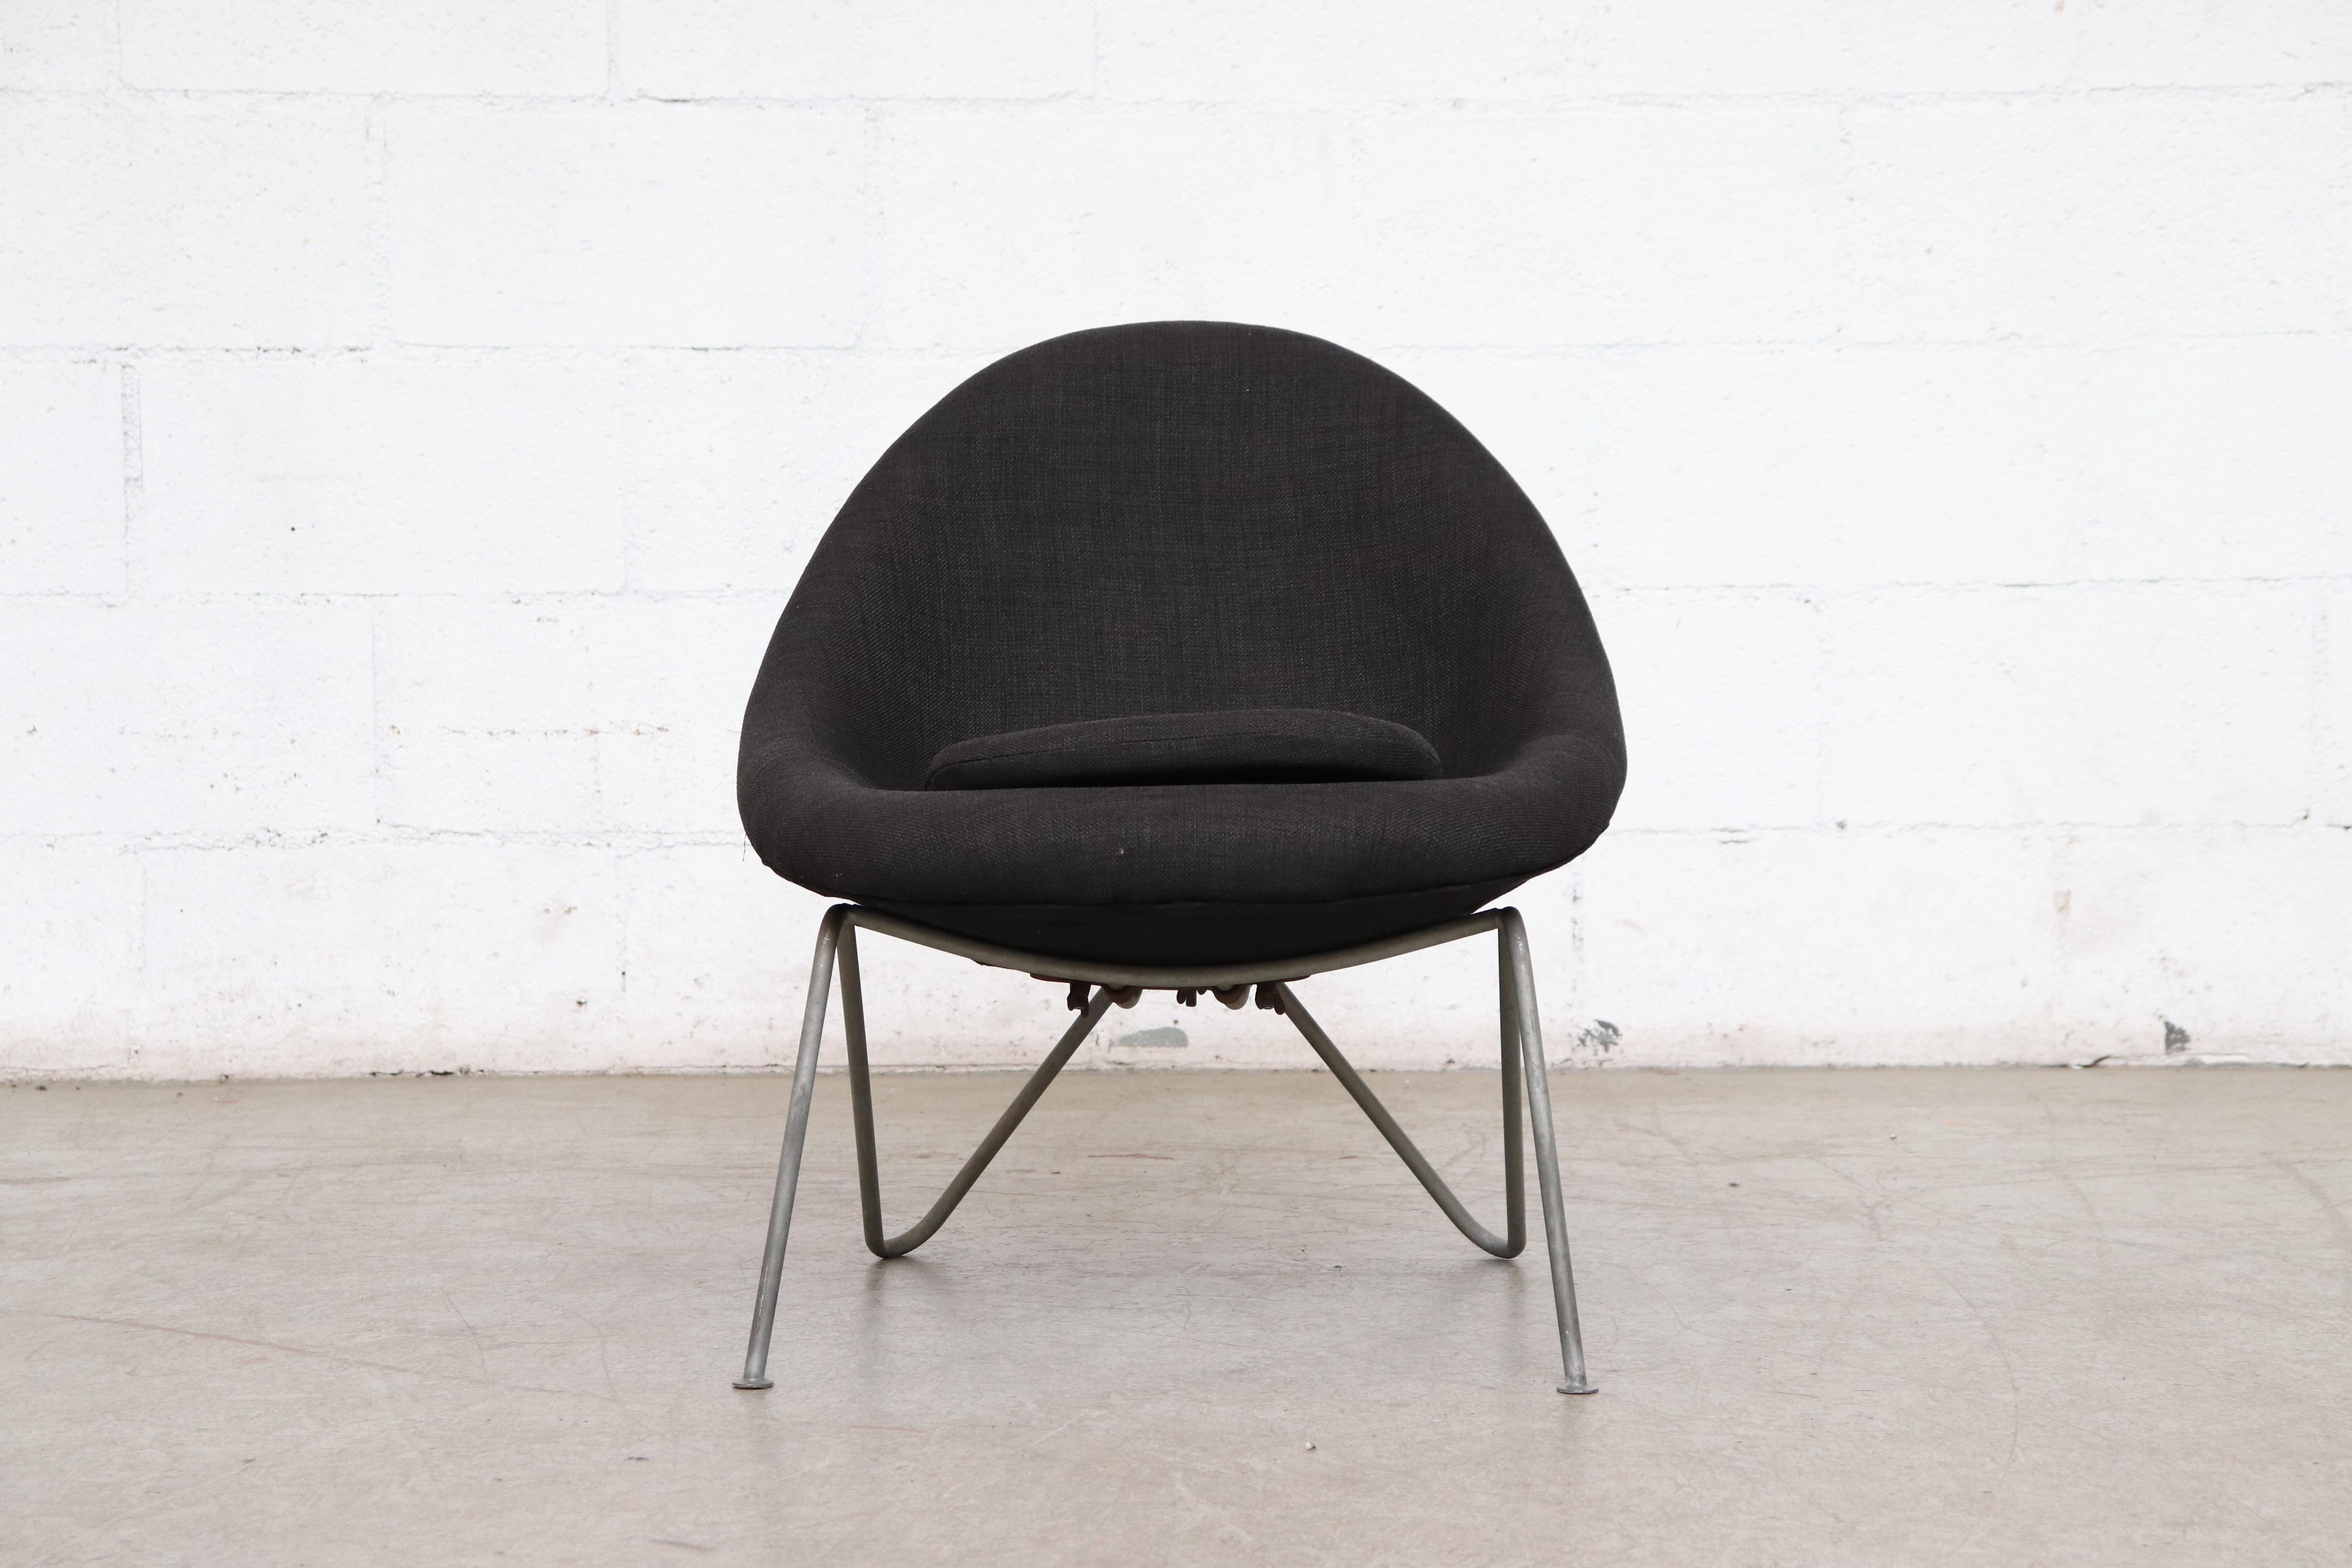 Petite chaise baquet du milieu du siècle récemment recouverte d'un tissu noir avec un cadre en métal émaillé gris avec une usure visible correspondant à l'âge et à l'utilisation.